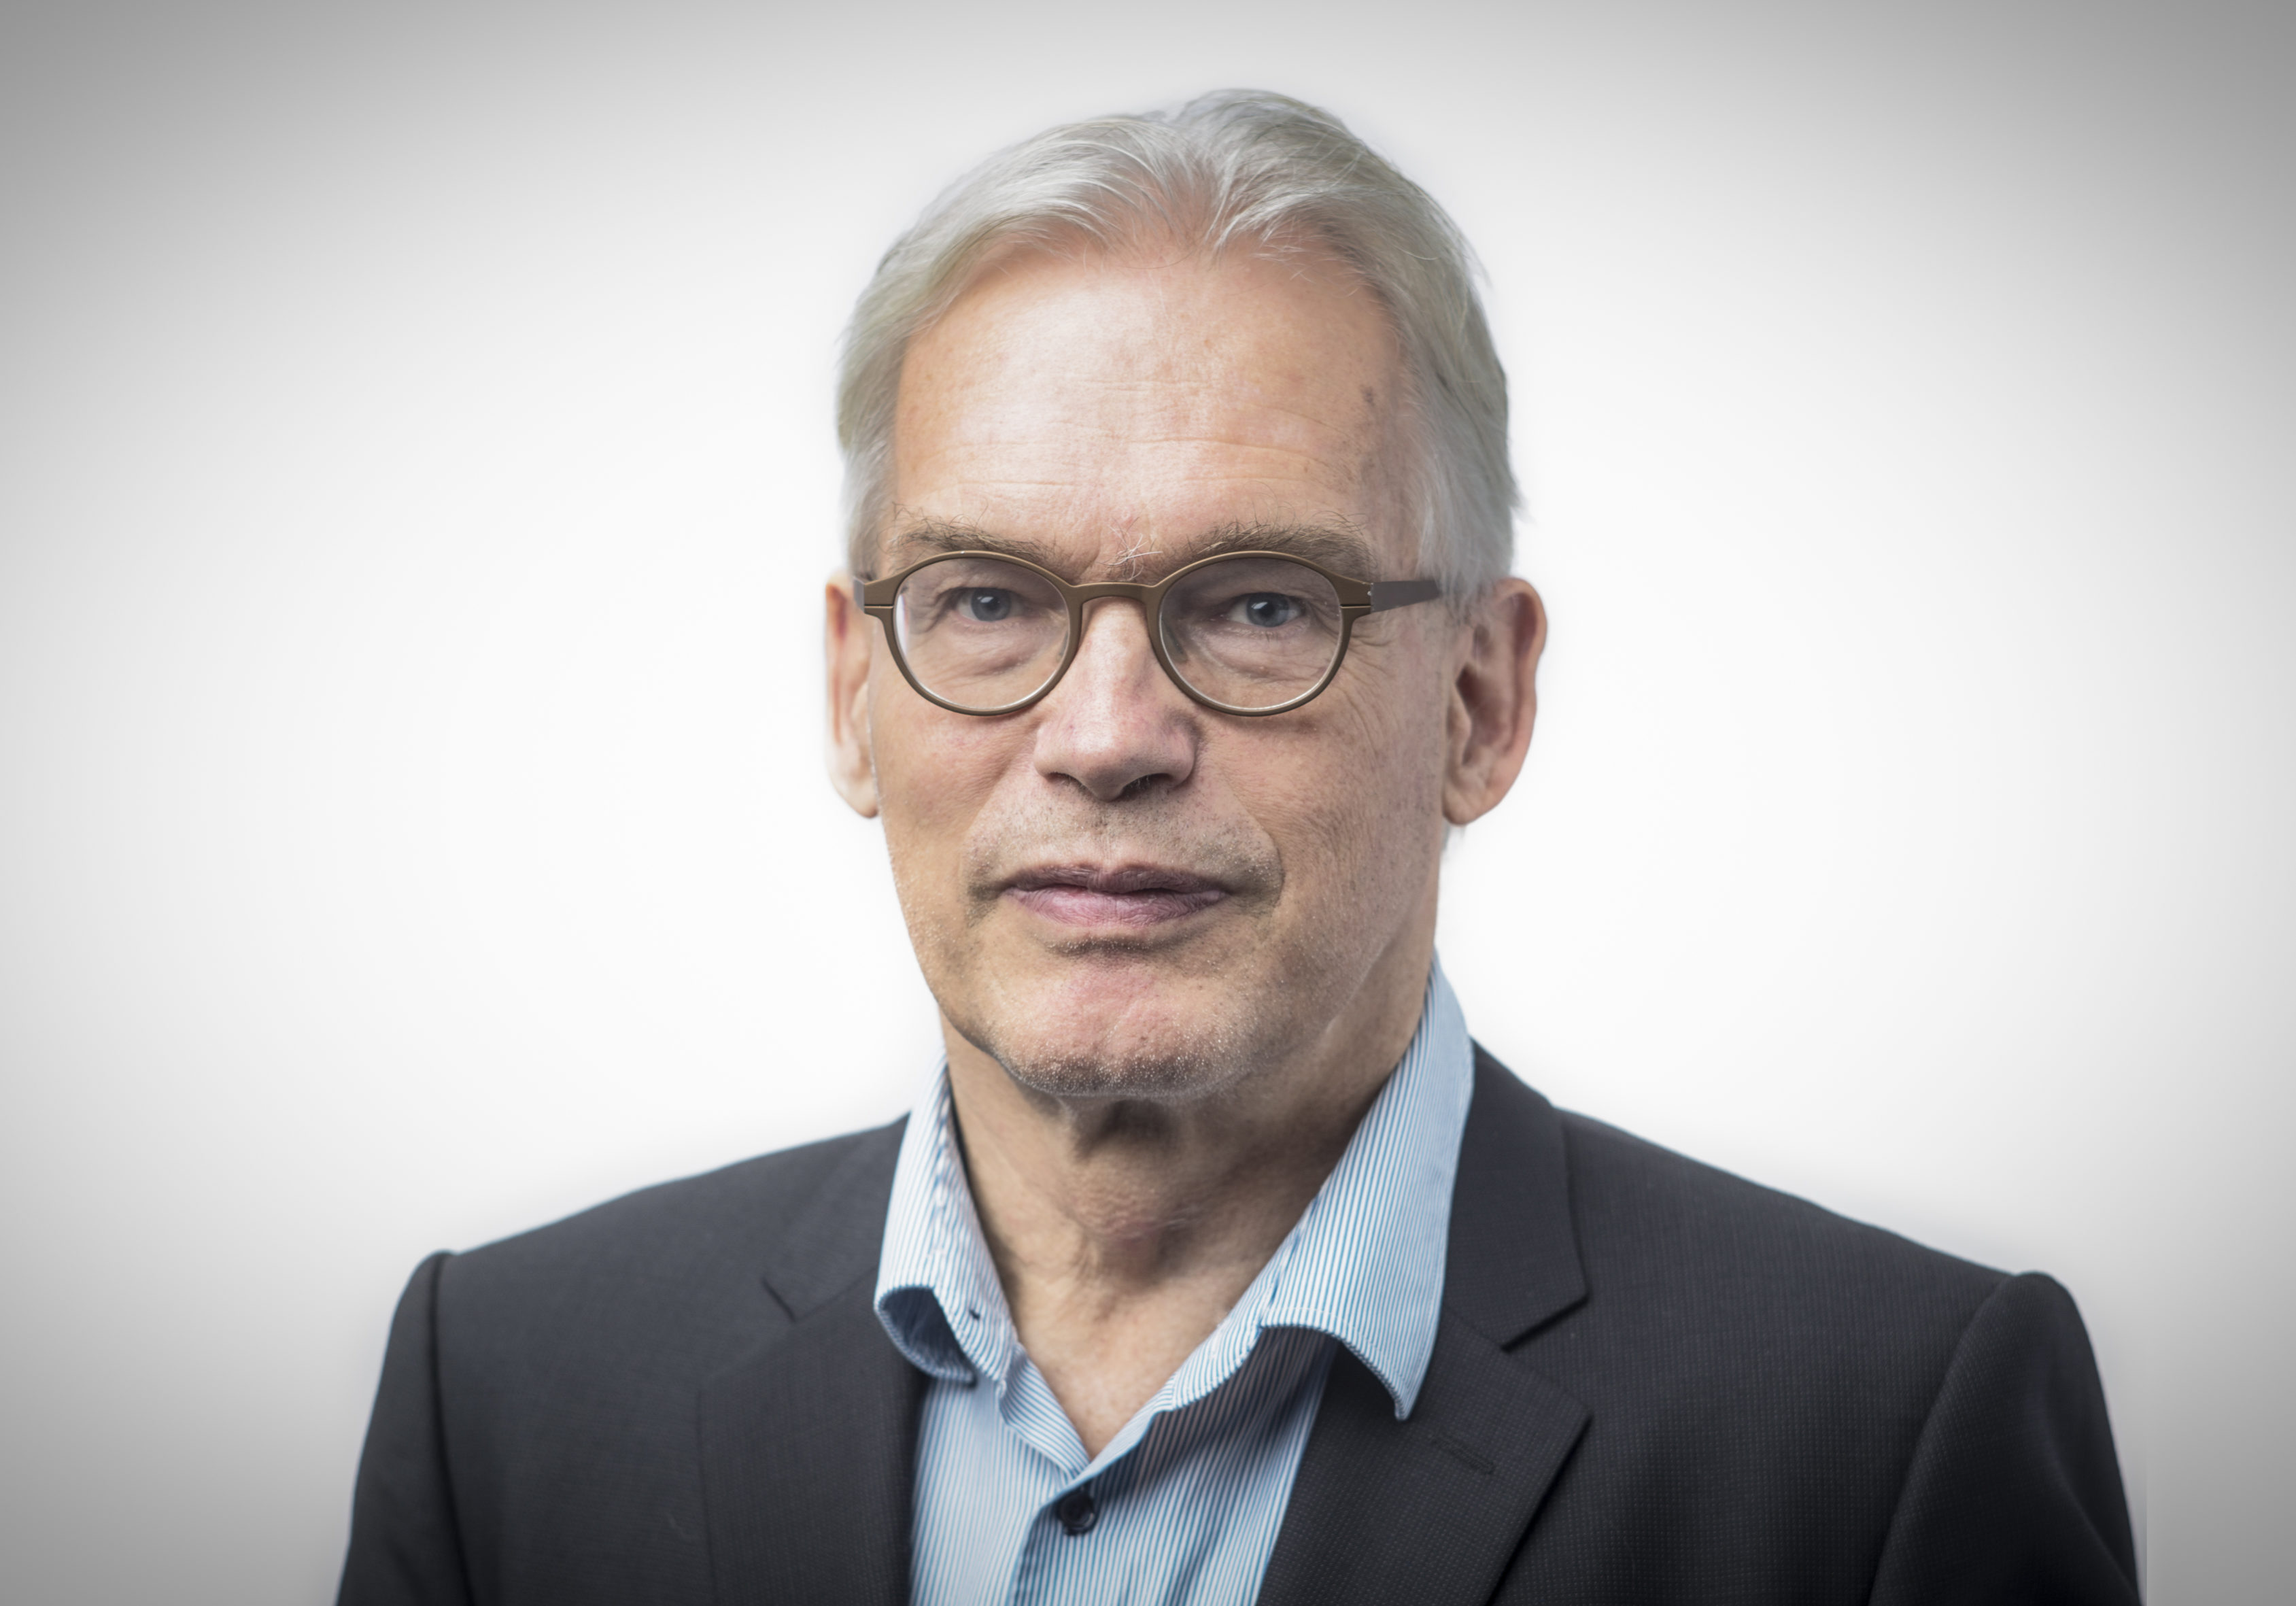 Ingolf Pernice | HIIG Director